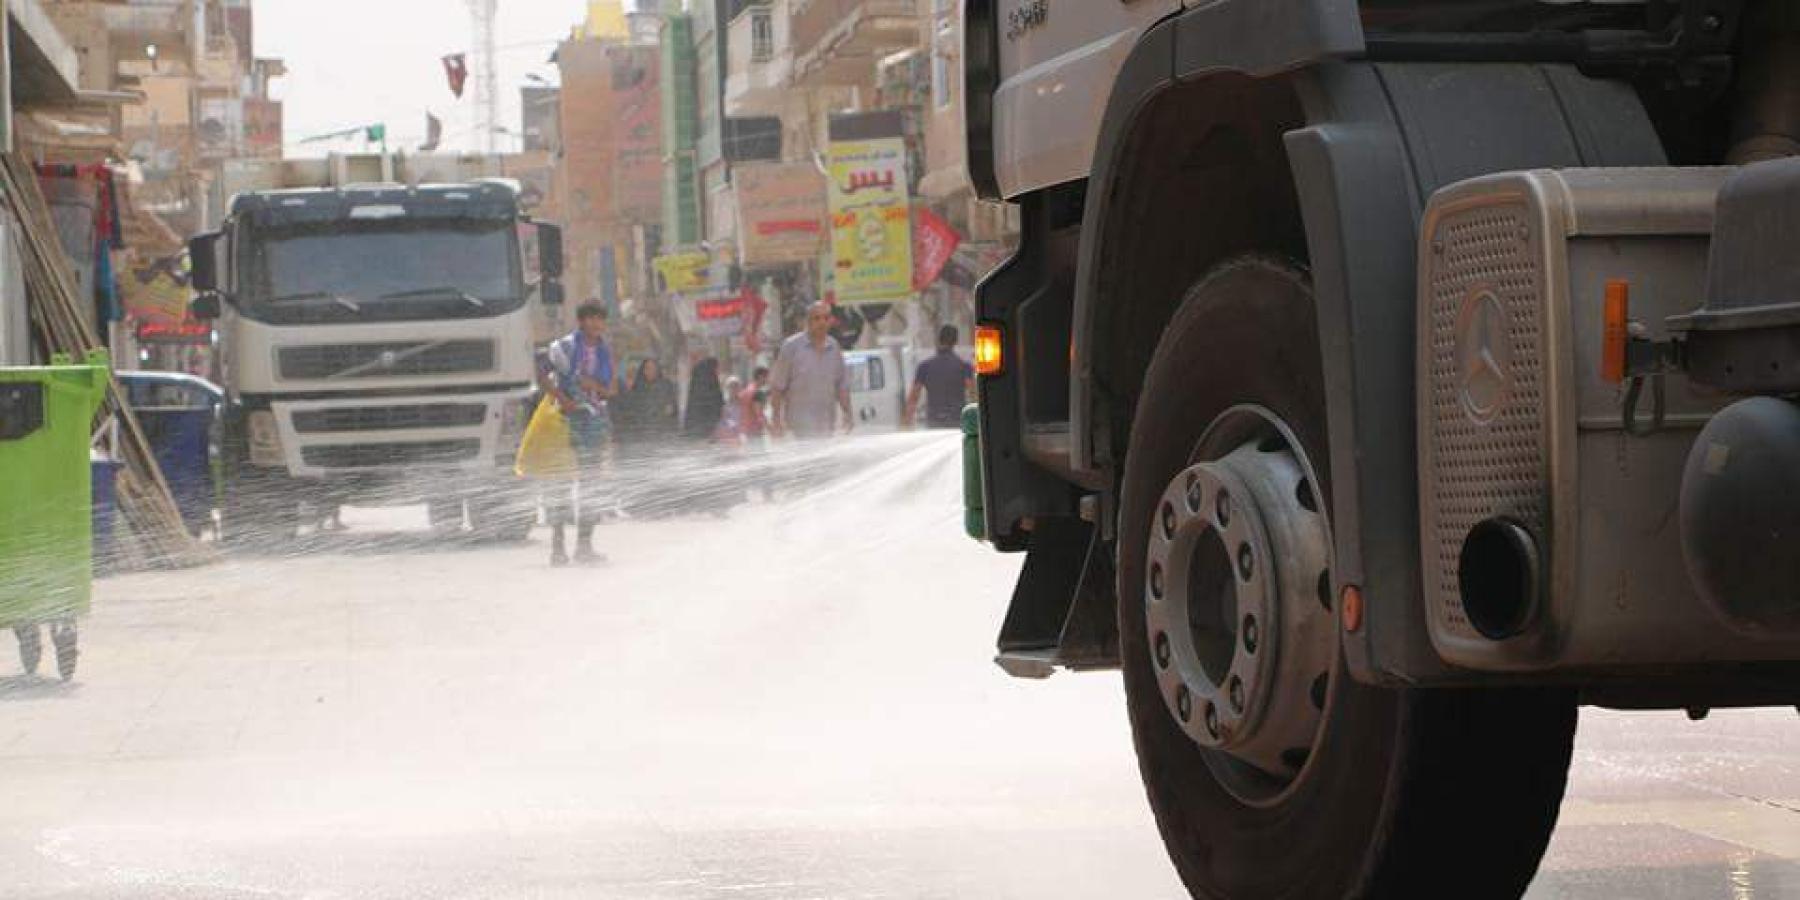 قسم الخدمات الخارجية في العتبة العلوية يقوم بحملة لغسل و تنظيف  الشوارع المؤدية الى المرقد الشريف